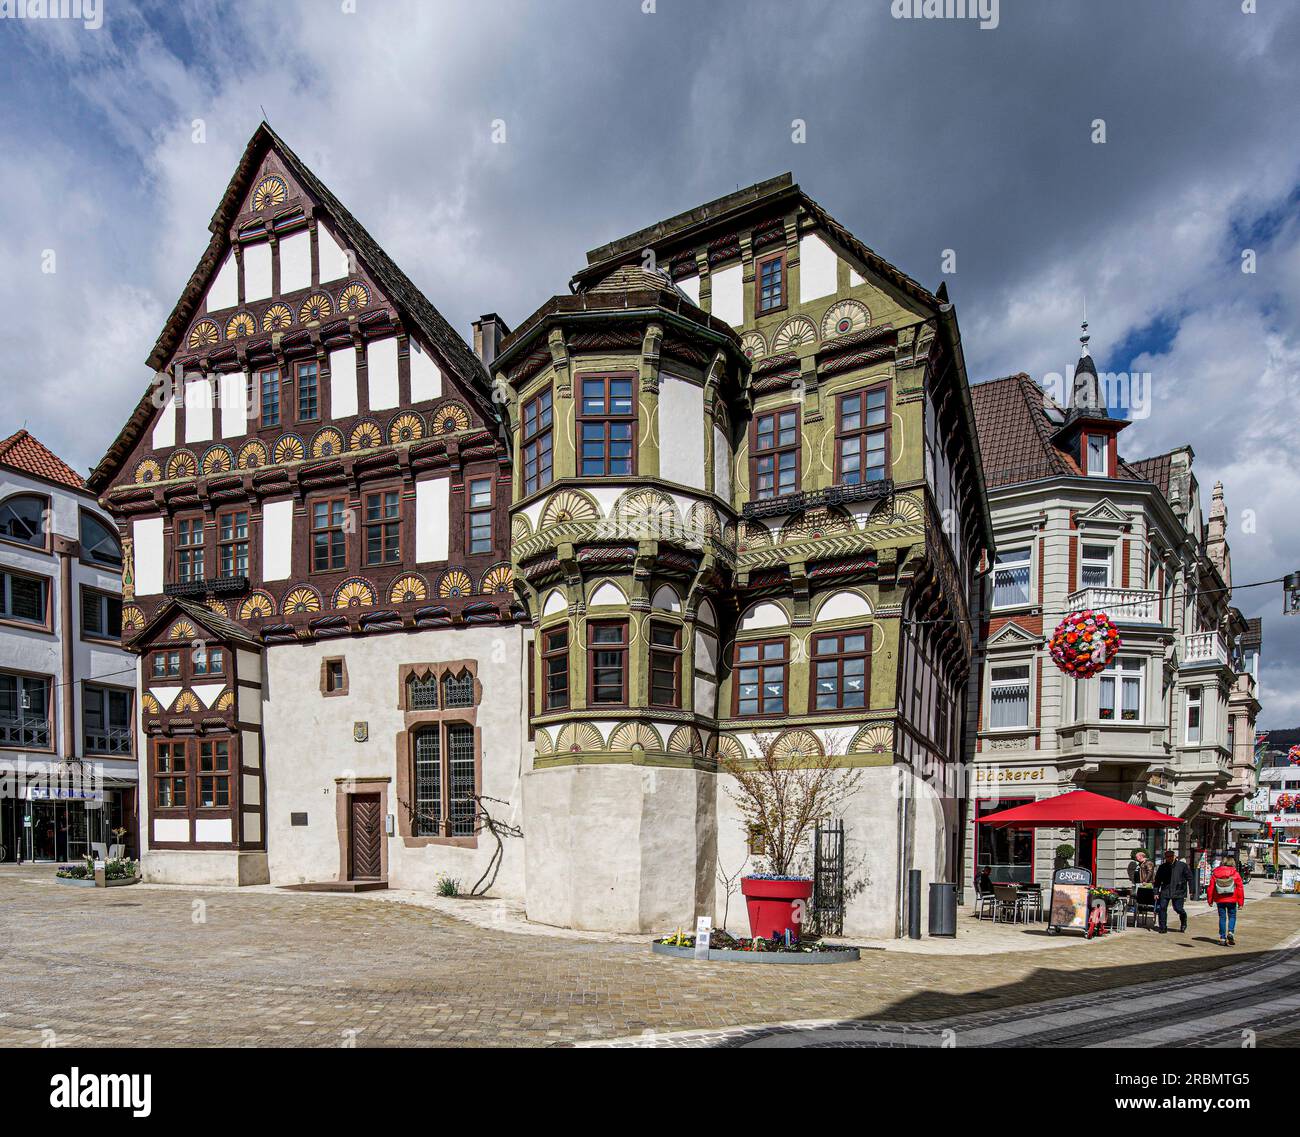 Maison à colombages dans le style de la Renaissance Weser, le Dechanei, vieille ville de Höxter, Weserbergland, Rhénanie du Nord-Westphalie, Allemagne Banque D'Images